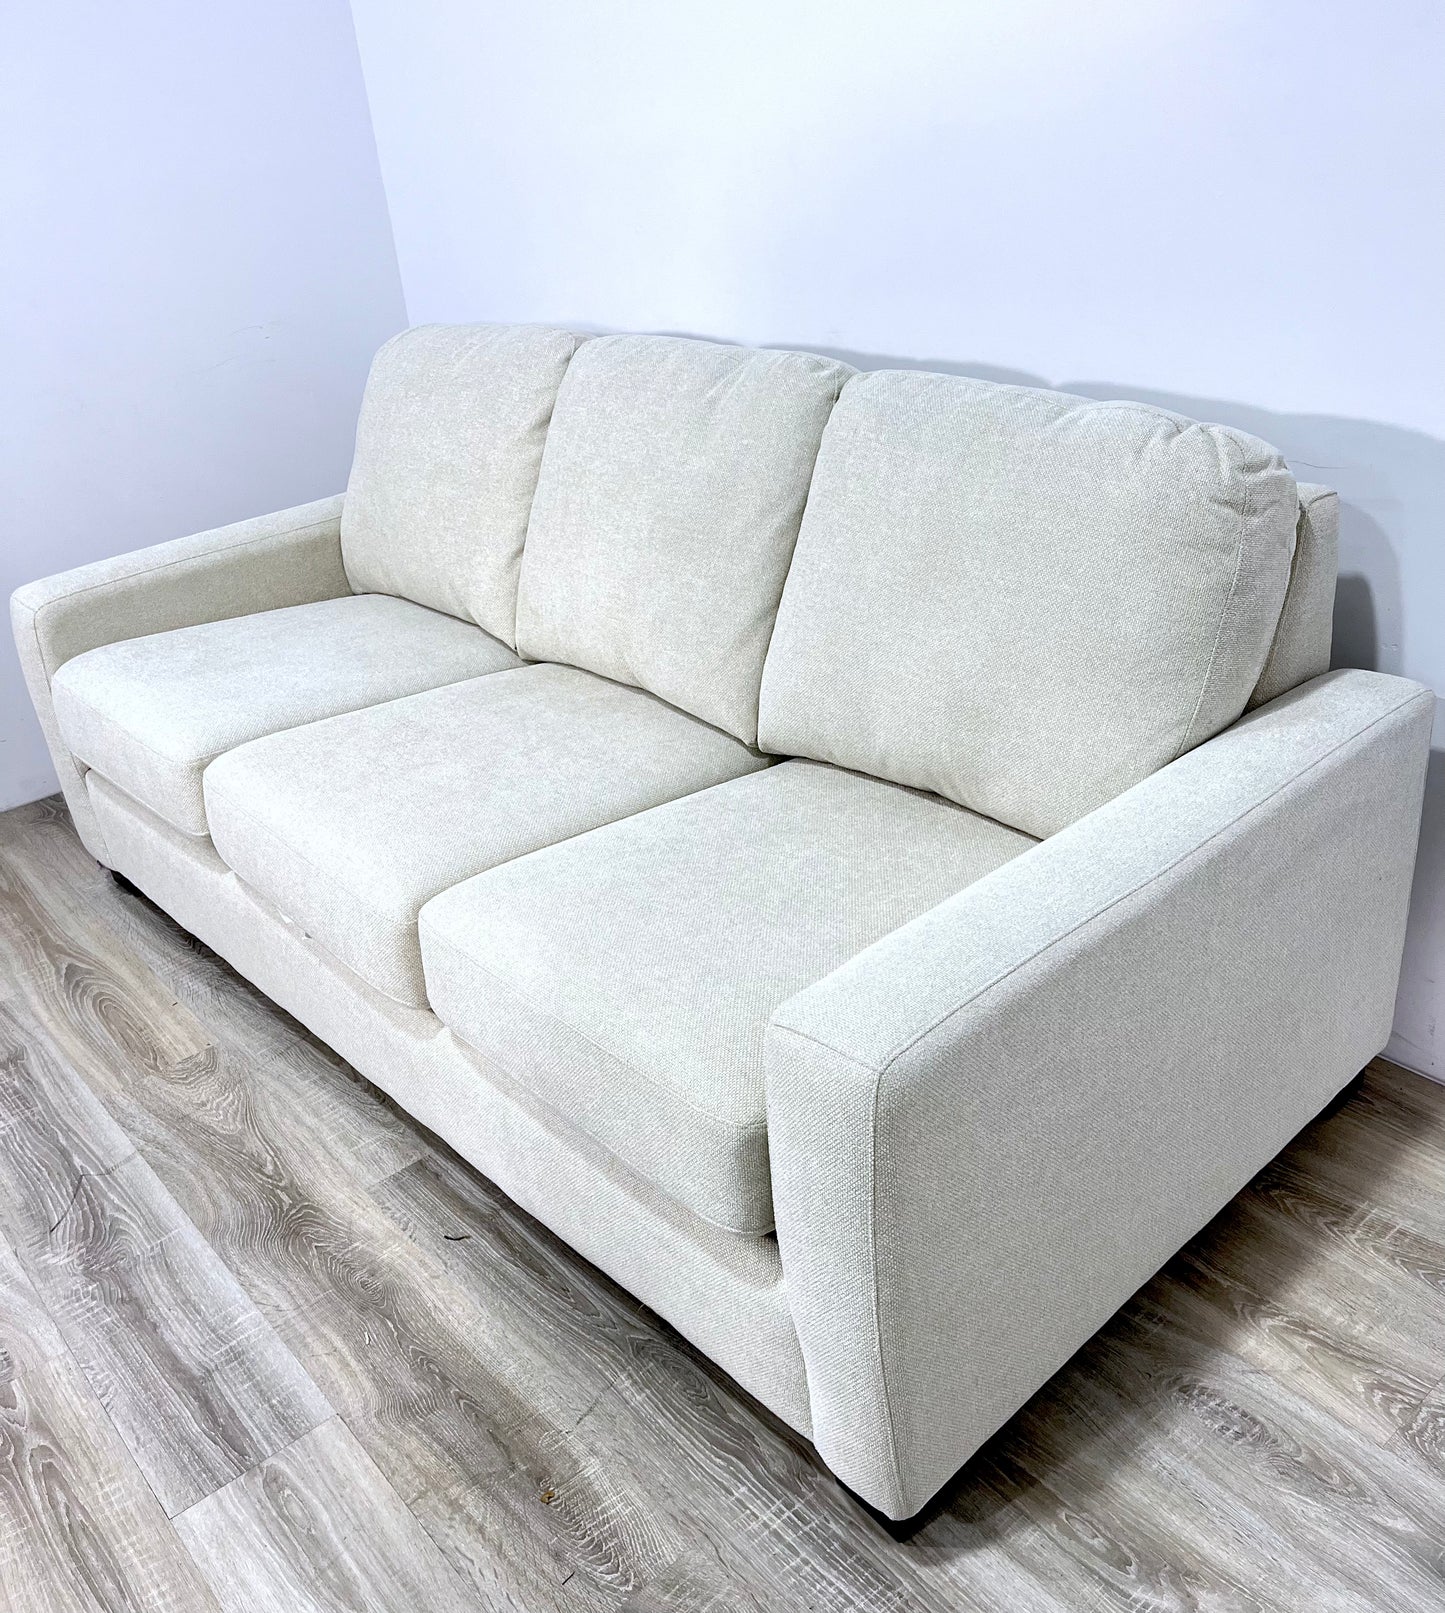 The Rachelle Sofa